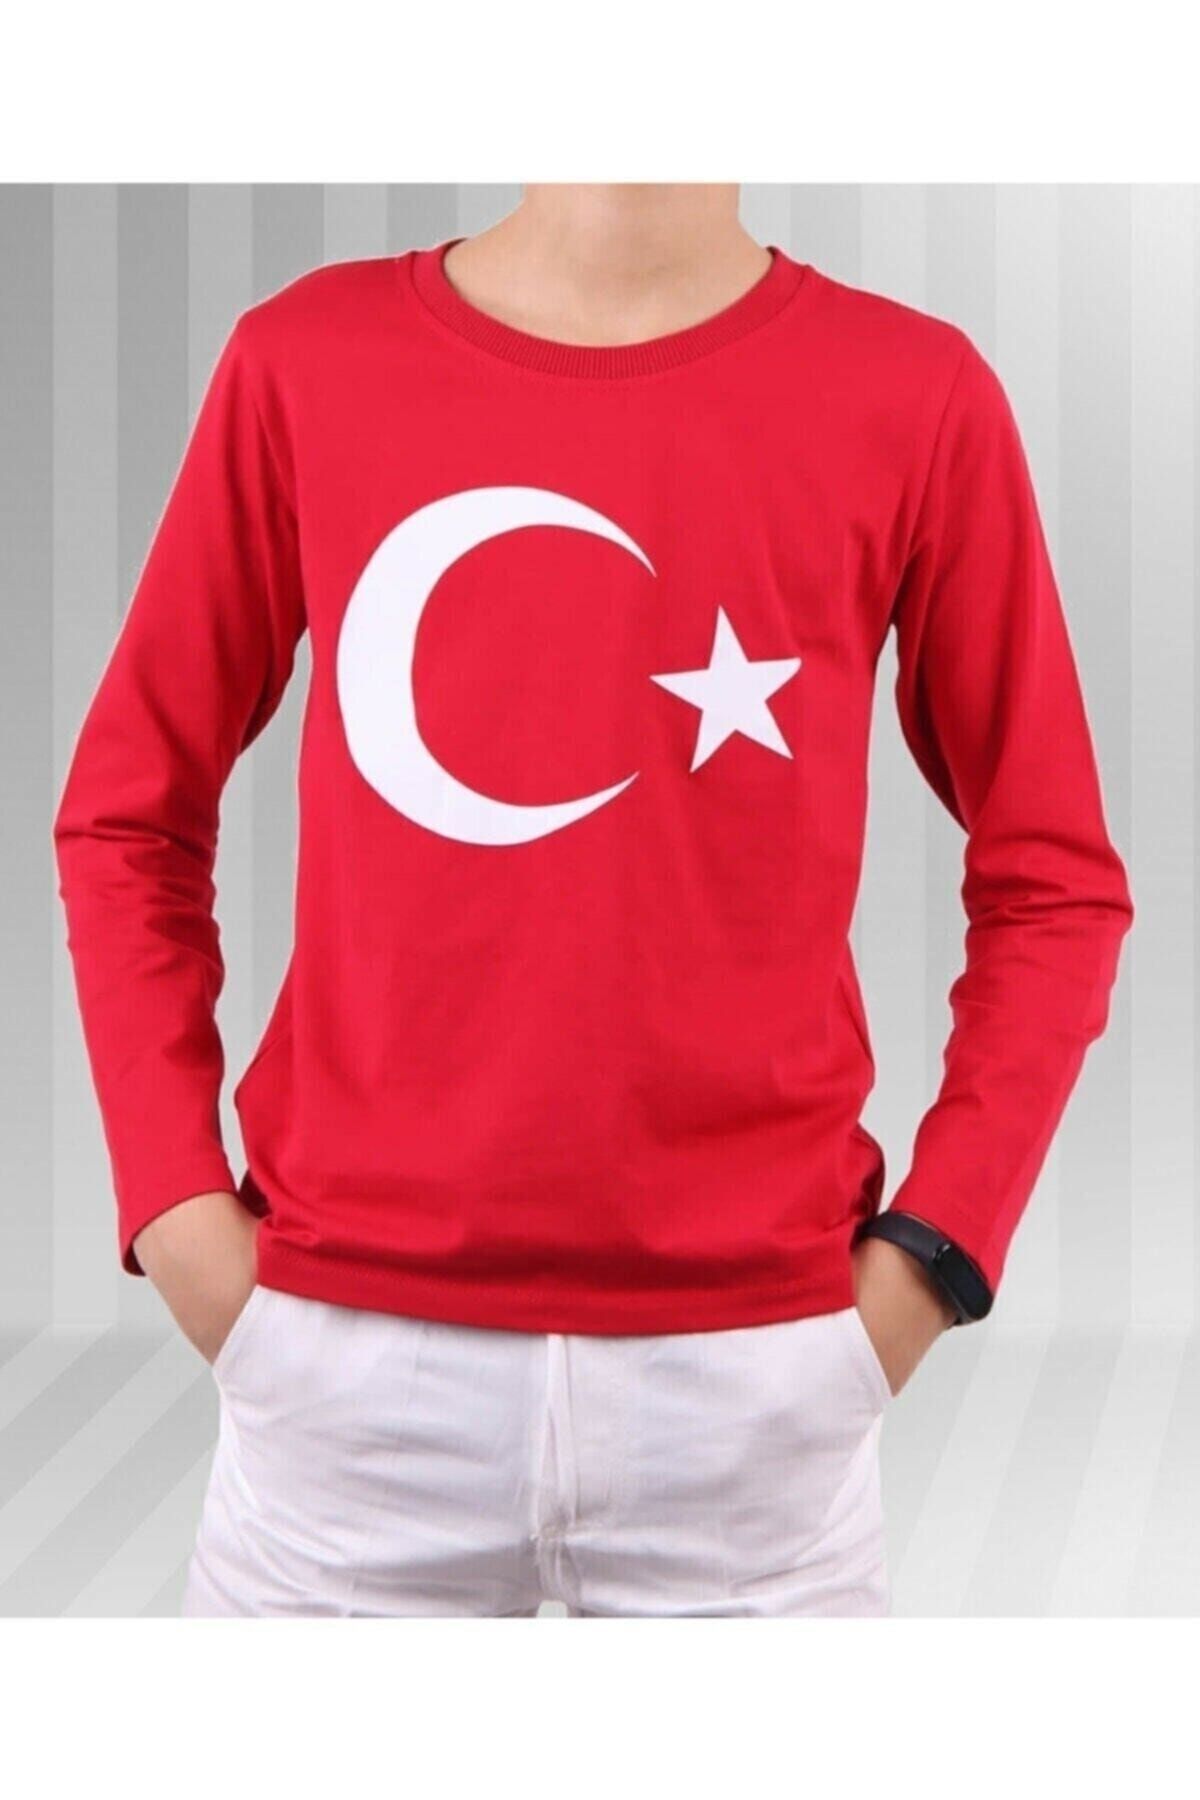 durumod Unisex Çocuk Kırmızı Ay Yıldız Türk Bayraklı Uzun Kollu T-shirt